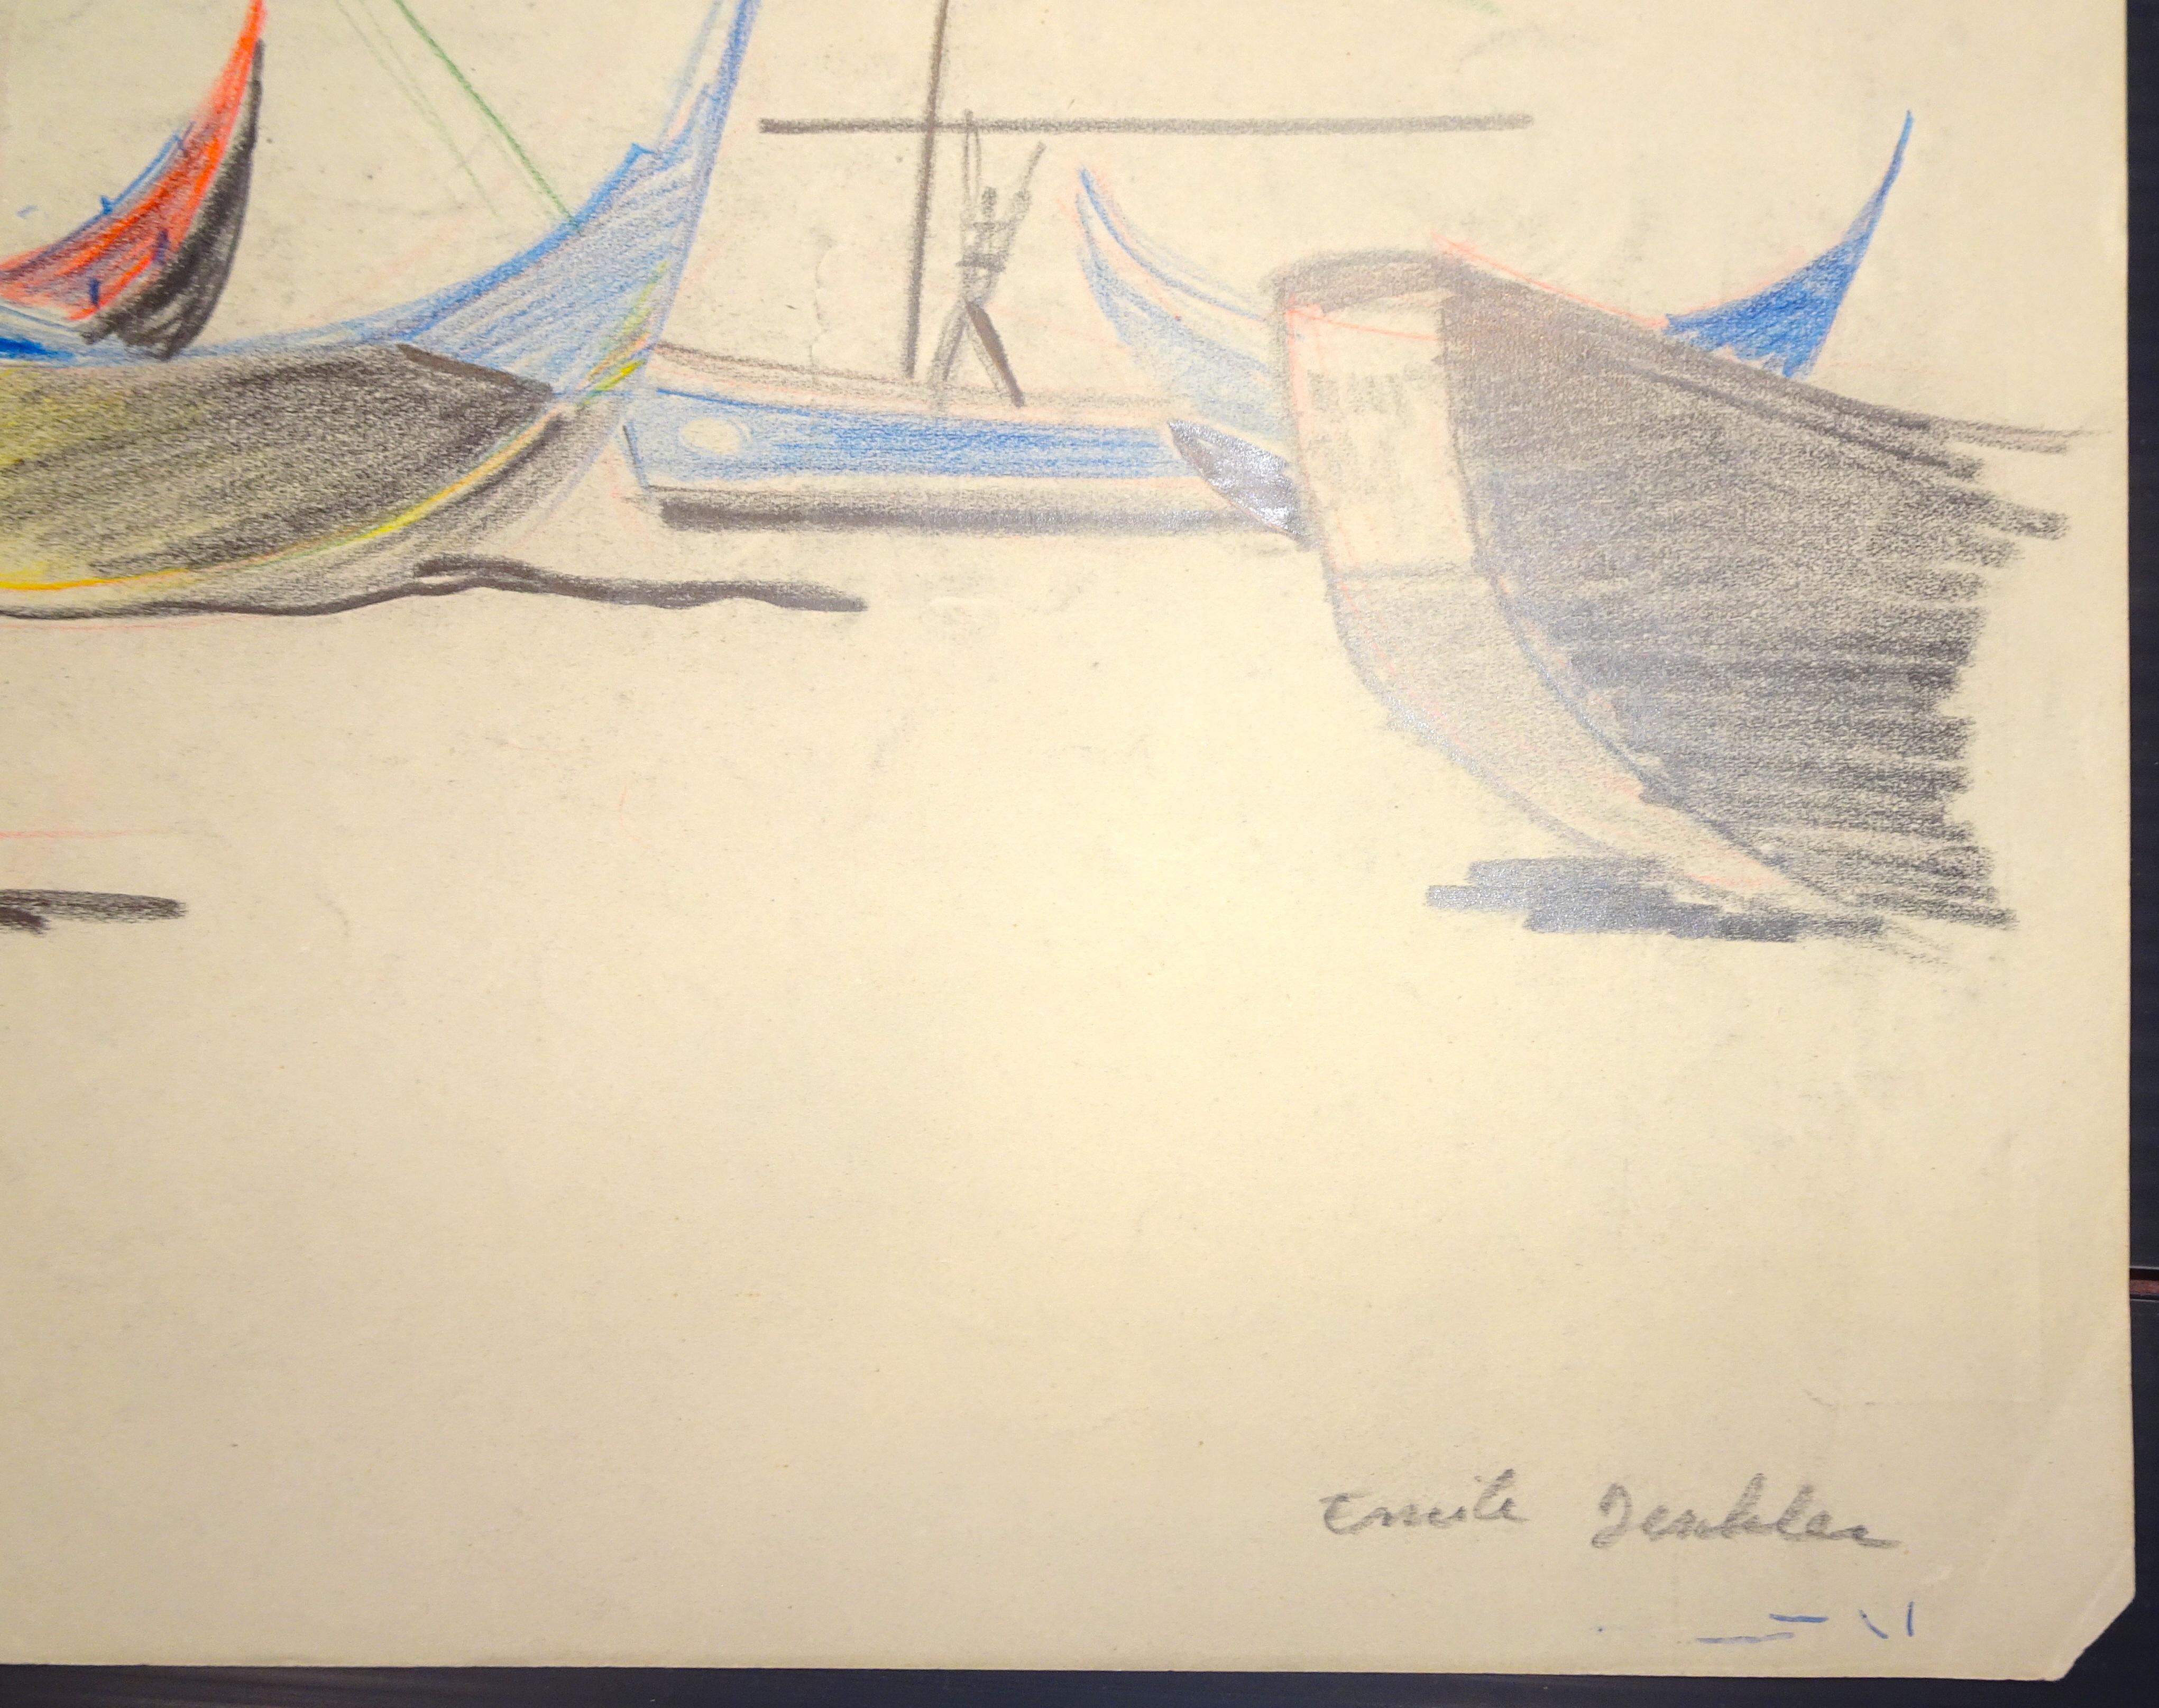 Boats - Original Pastel on Paper by Emile Deschler - 1980s 1